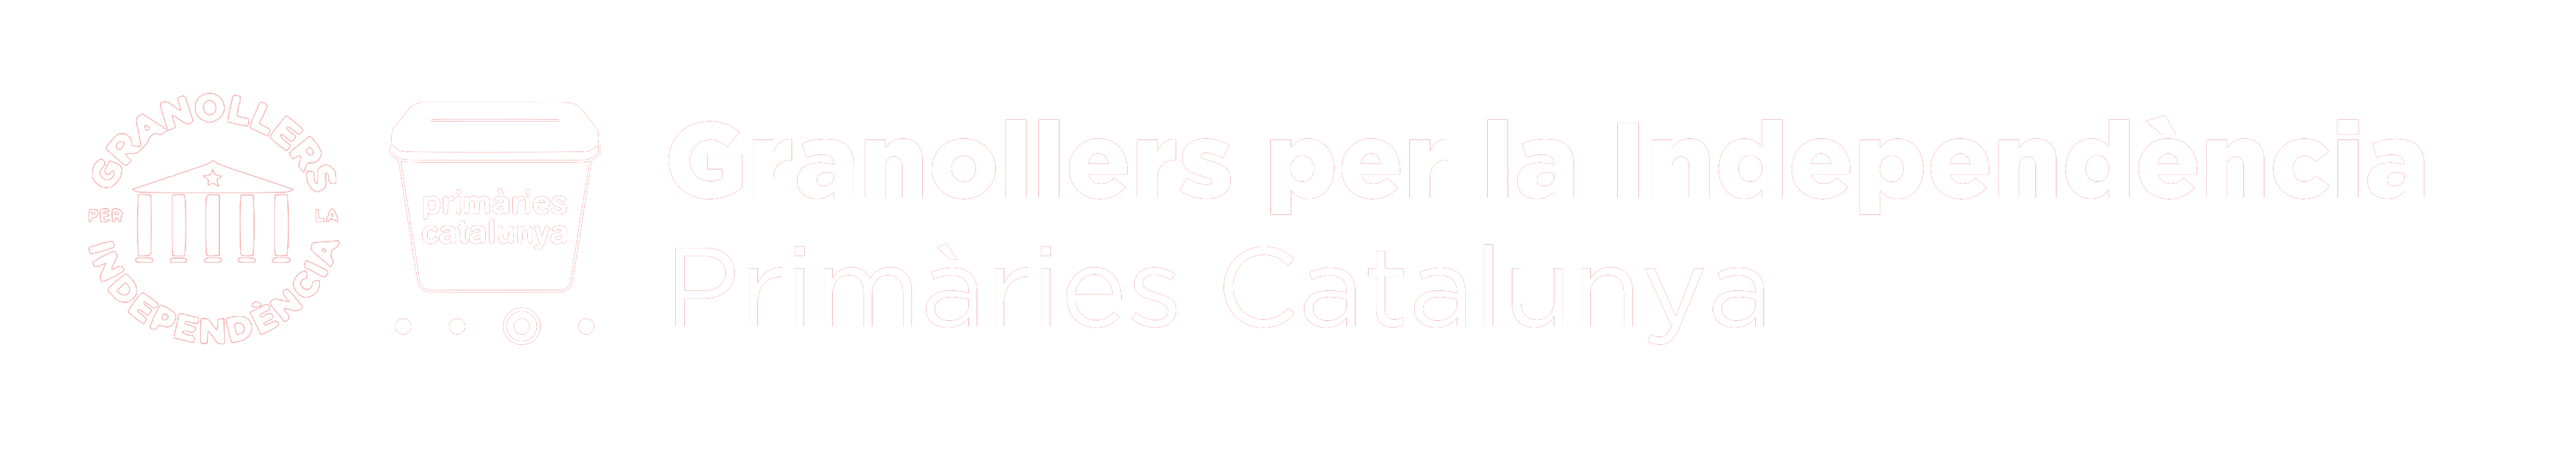 Granollers per la Independència - Primàries Catalunya